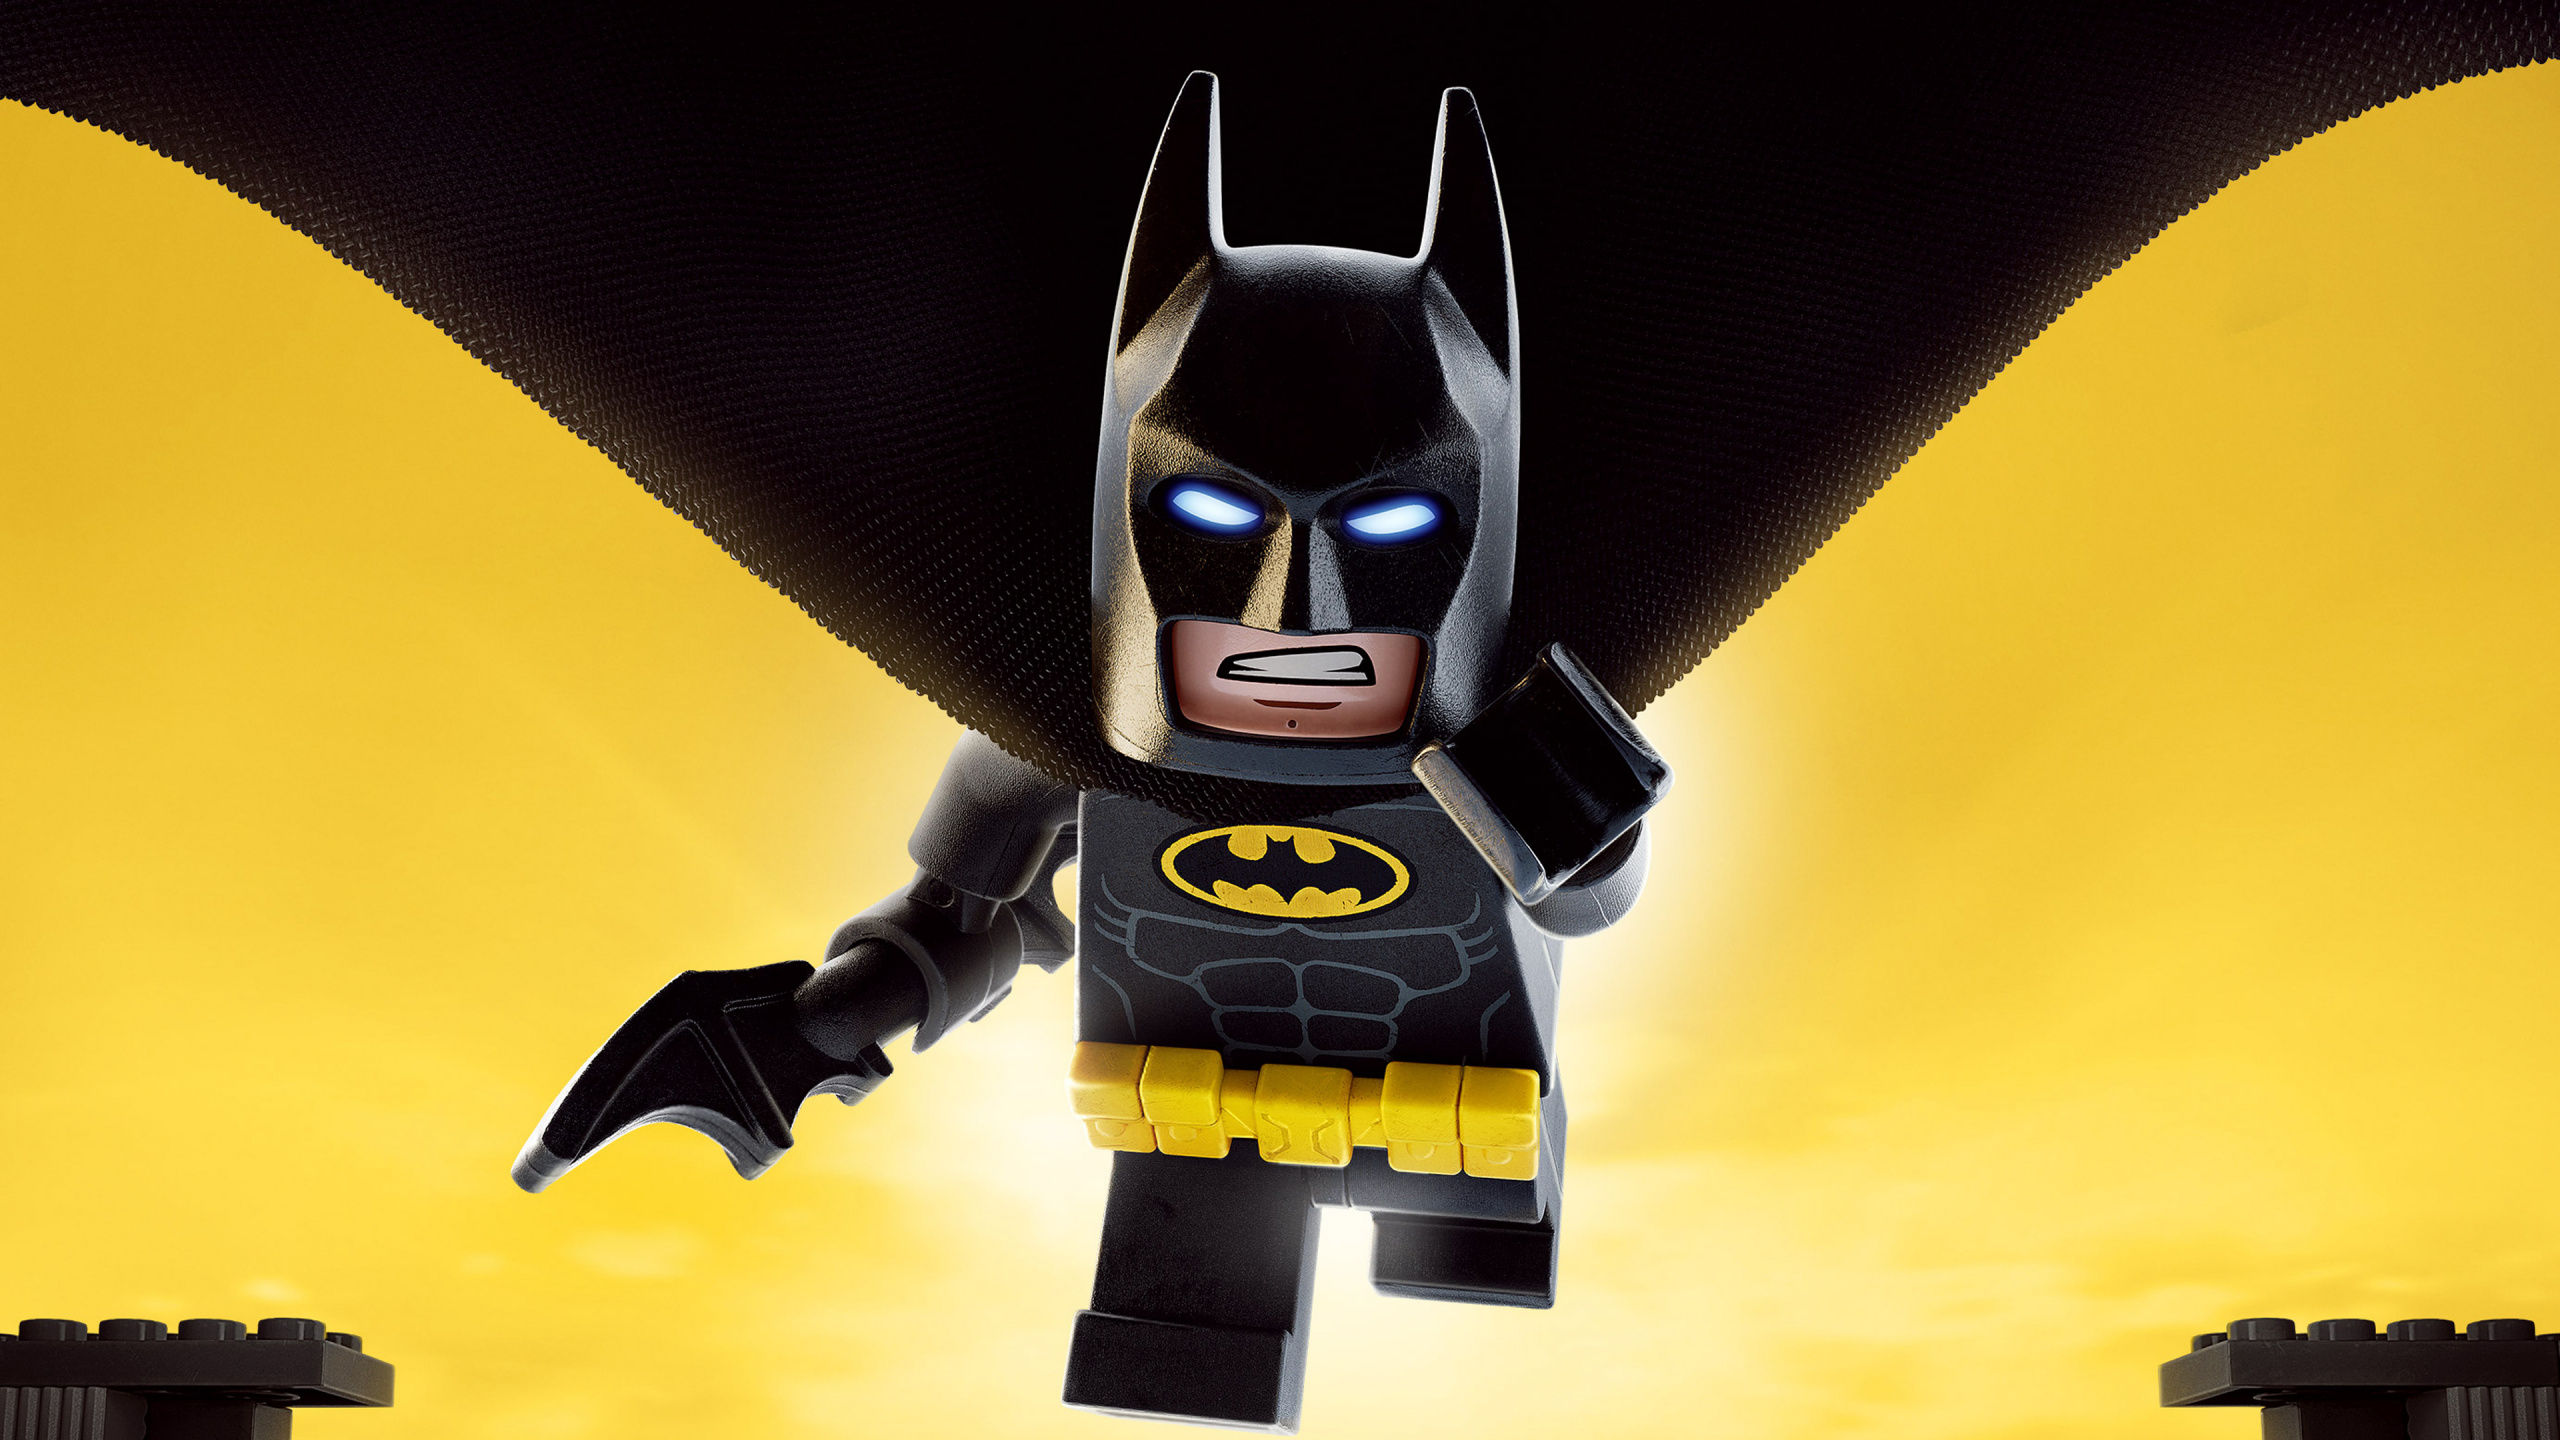 Скачать 2560x1440 обои Бэтмен, Лего Фильм, Уорнер Бразерс, Супергерой, Игру...